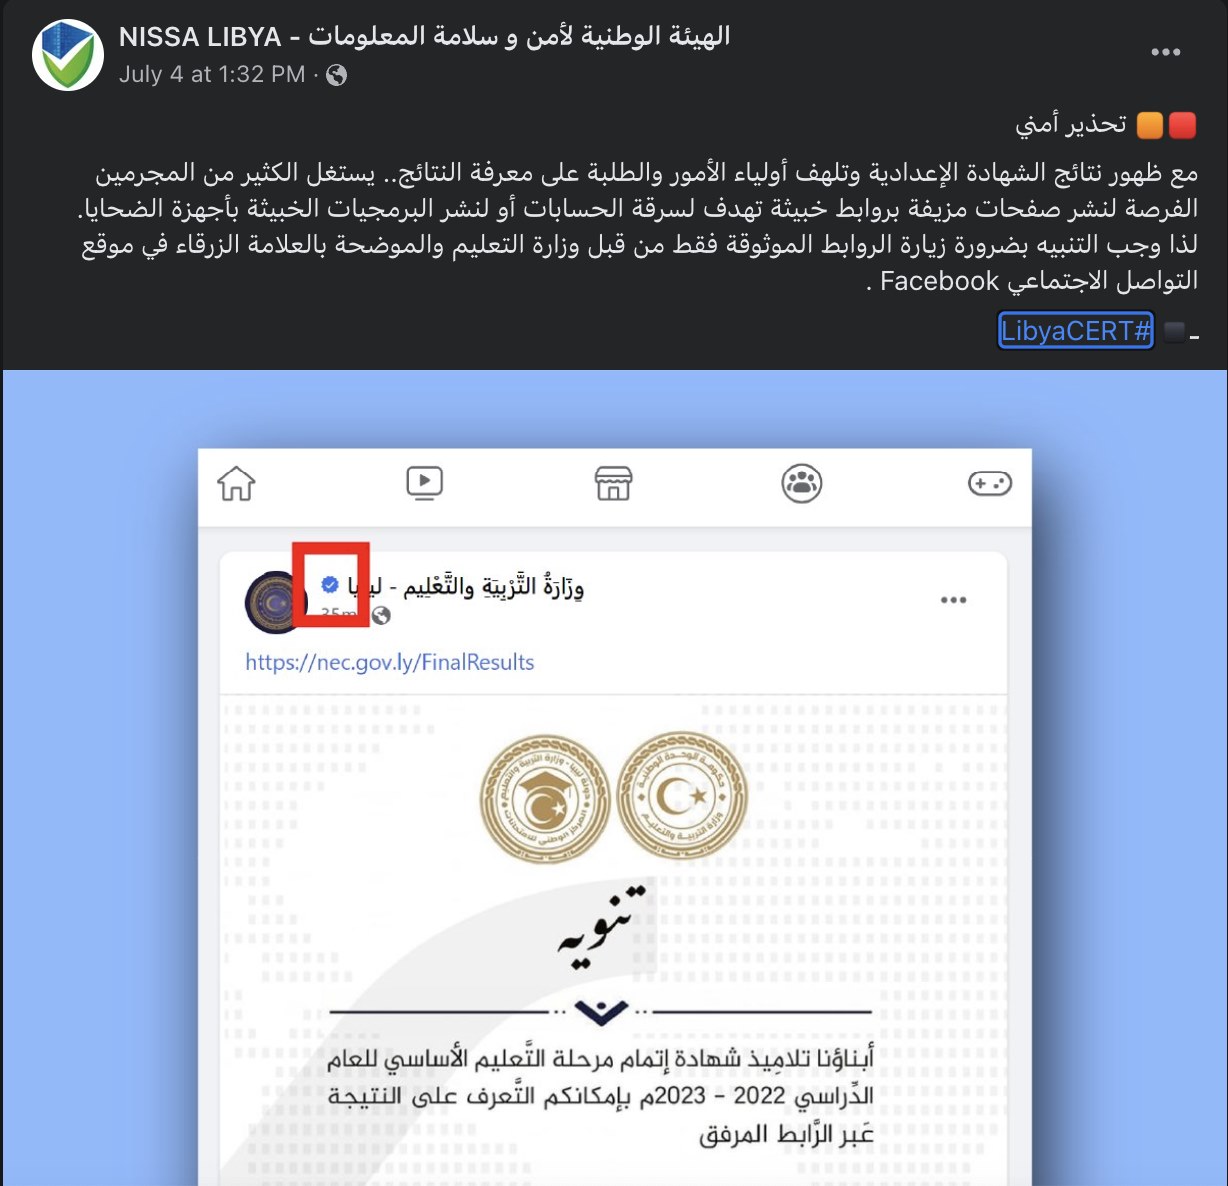 الهيئة الوطنية لأمن وسلامة المعلومات - امتحانات الشهادة الثانوية ليبيا